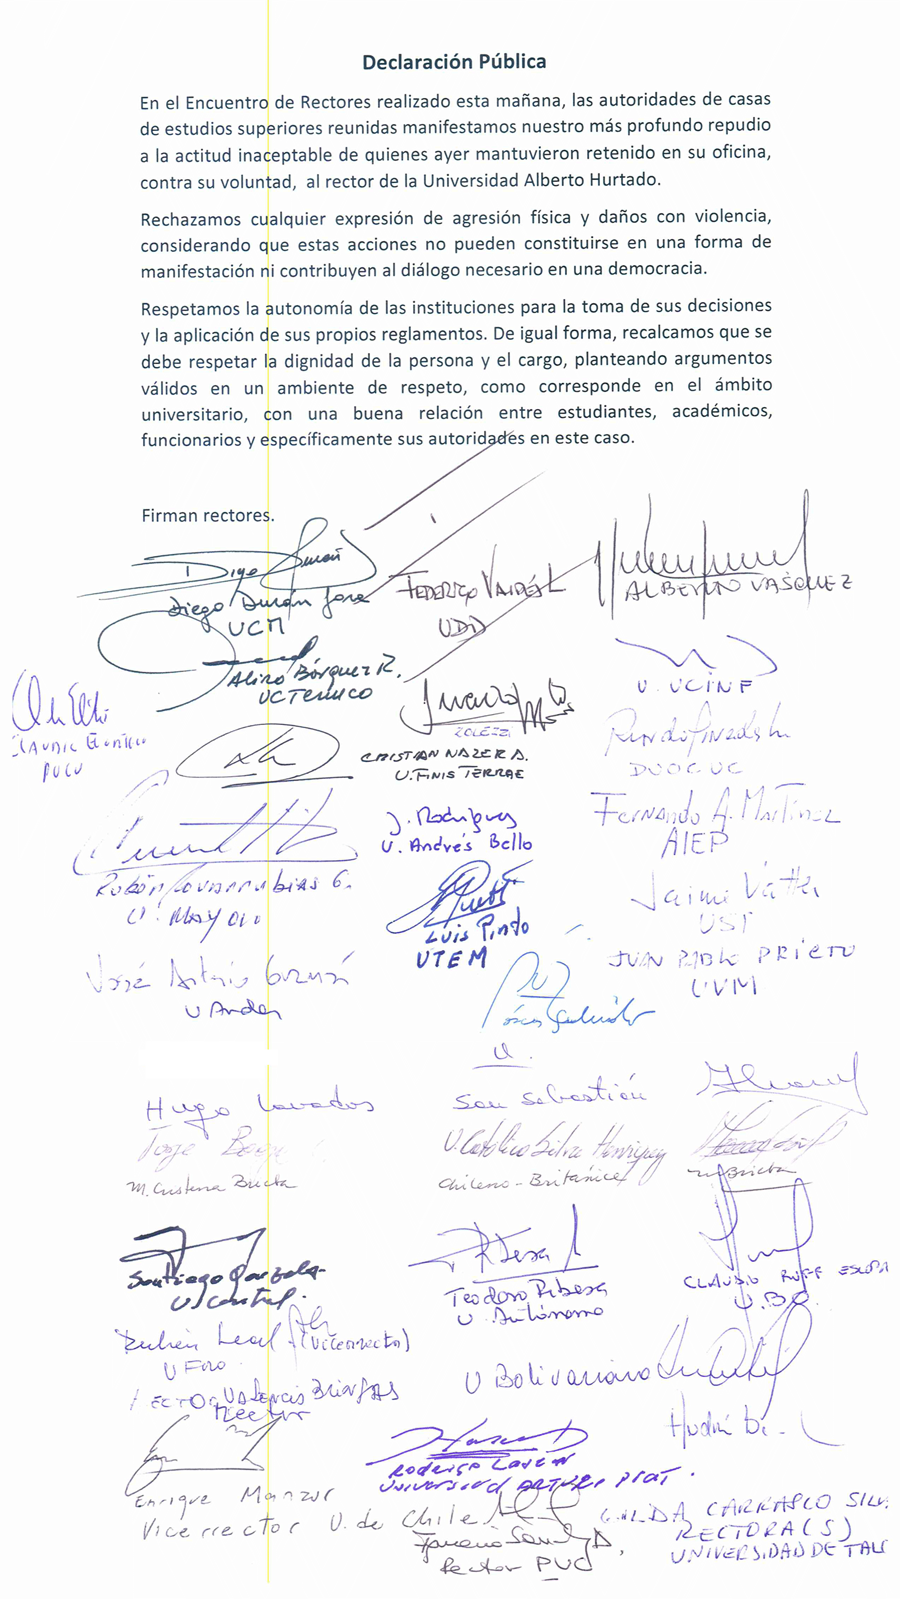 Declaración de rectores repudiando retención del rector de la UAH